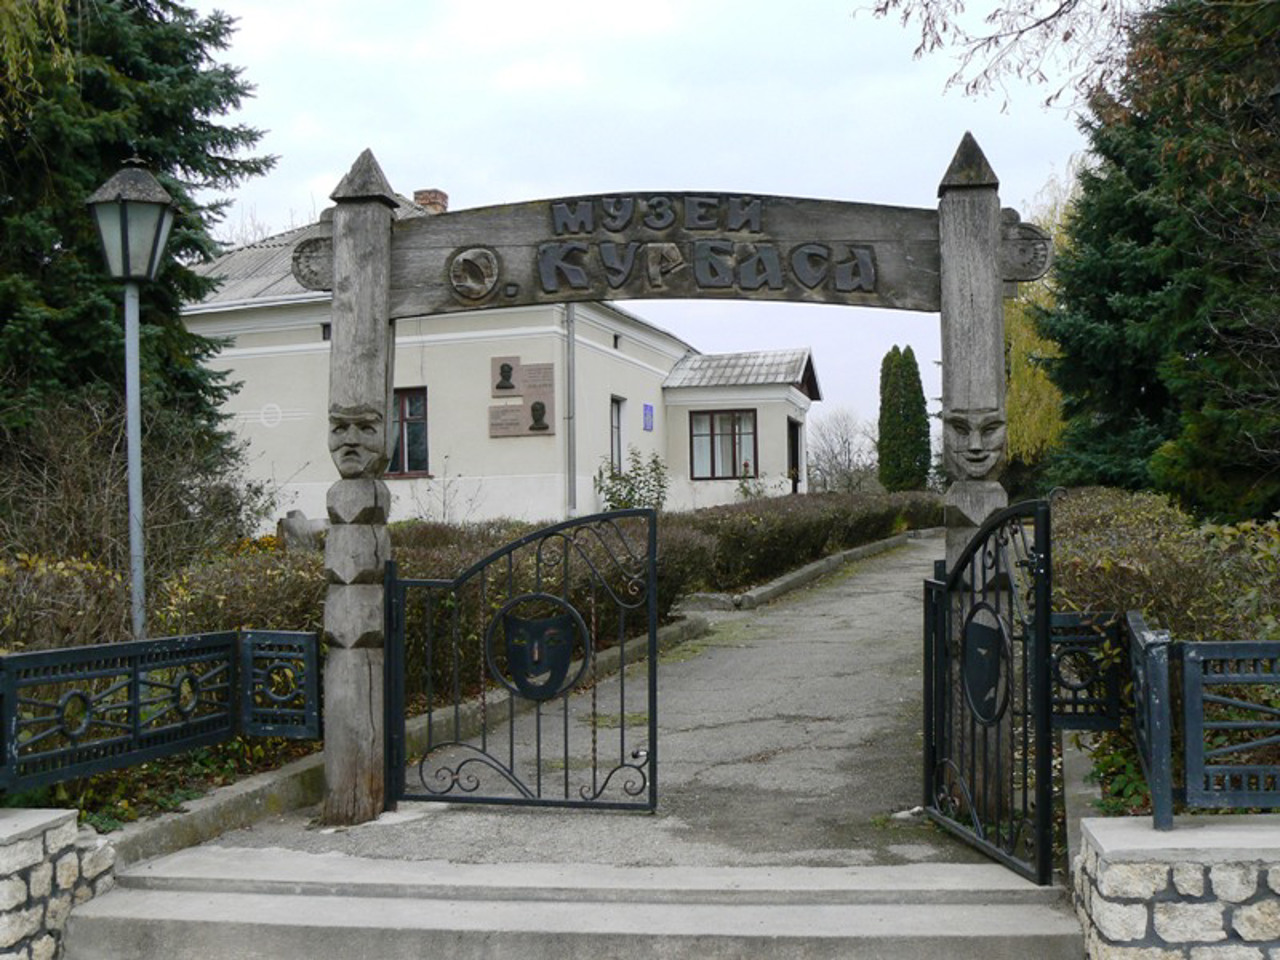 Les Kurbas Memorial Museum-Estate